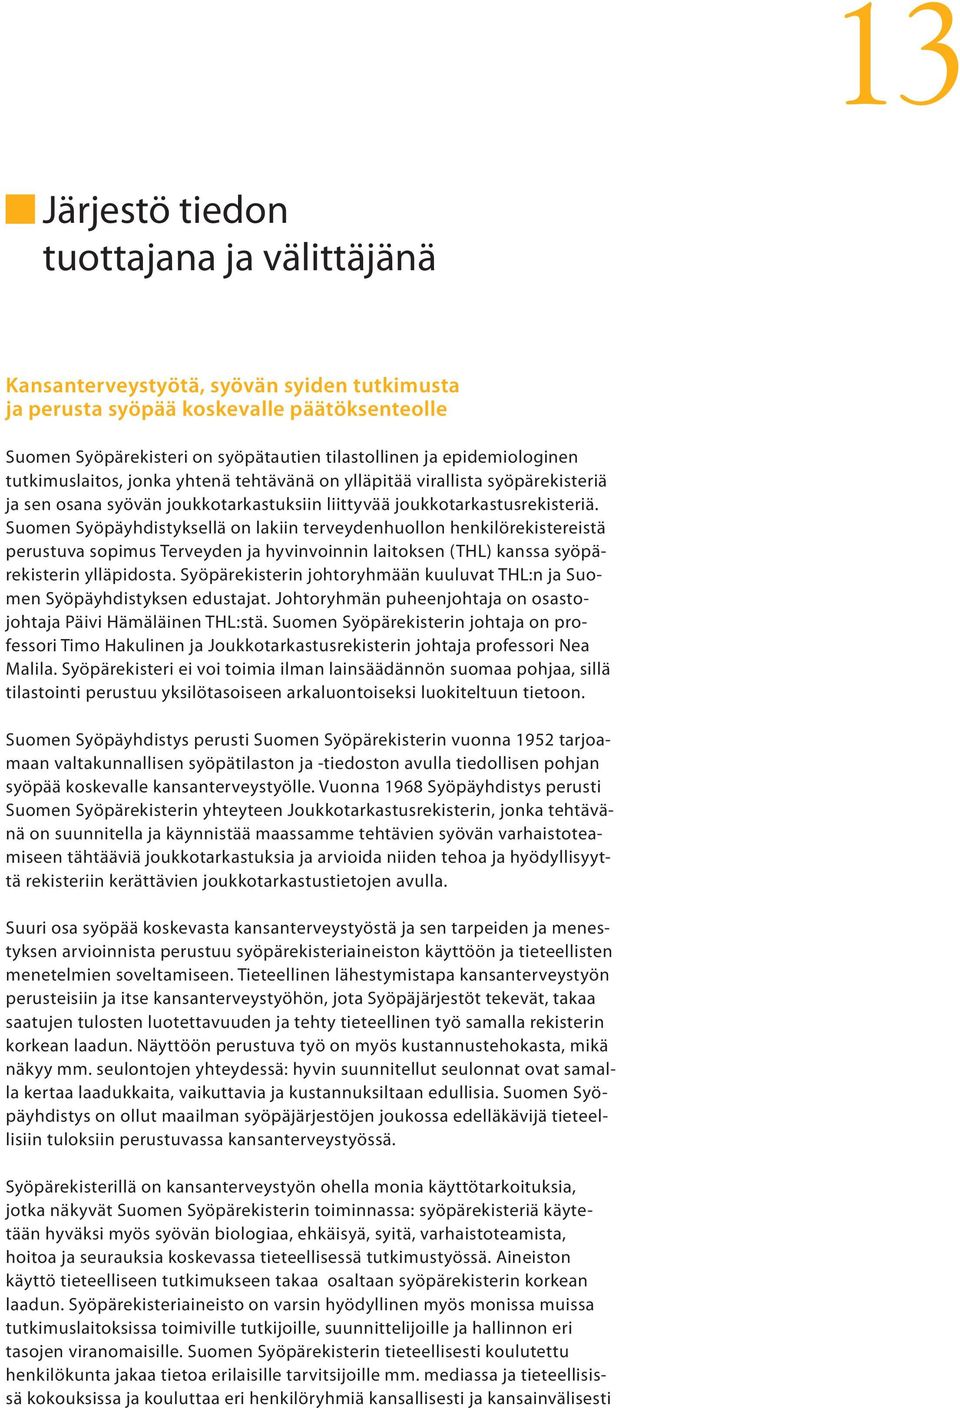 Suomen Syöpäyhdistyksellä on lakiin terveydenhuollon henkilörekistereistä perustuva sopimus Terveyden ja hyvinvoinnin laitoksen (THL) kanssa syöpärekisterin ylläpidosta.